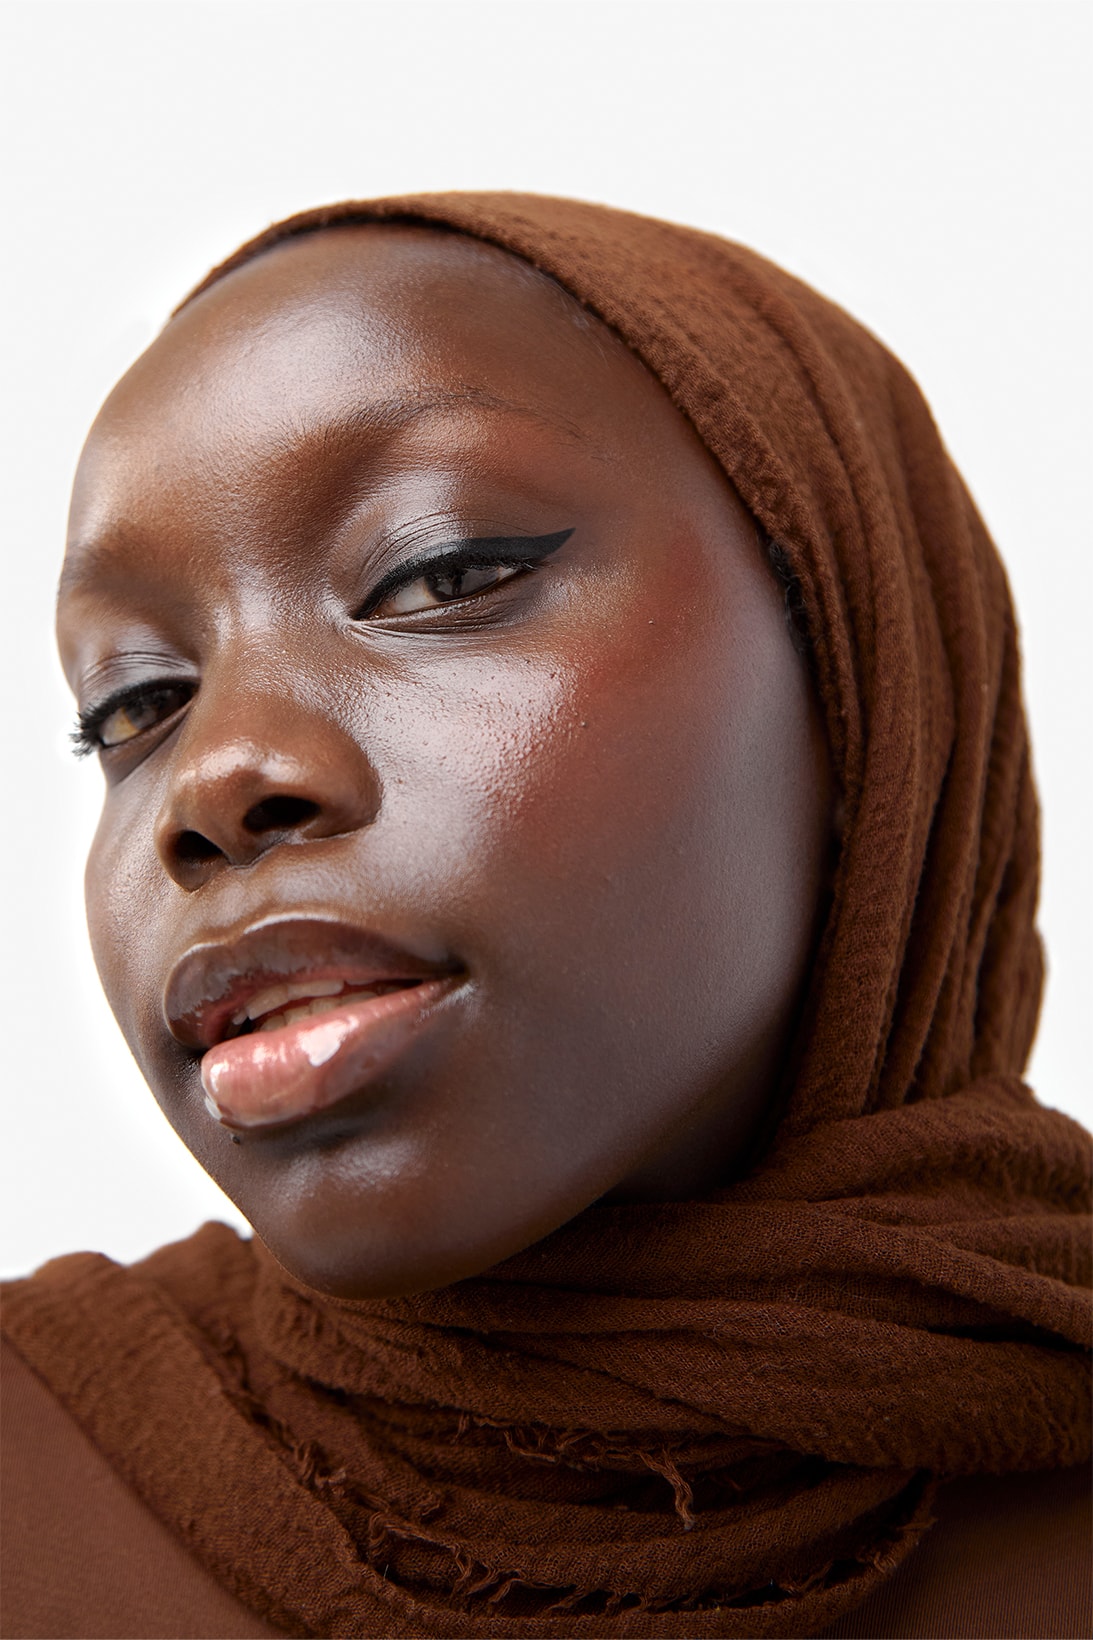 espressoh hi_liner makeup campaign images black model